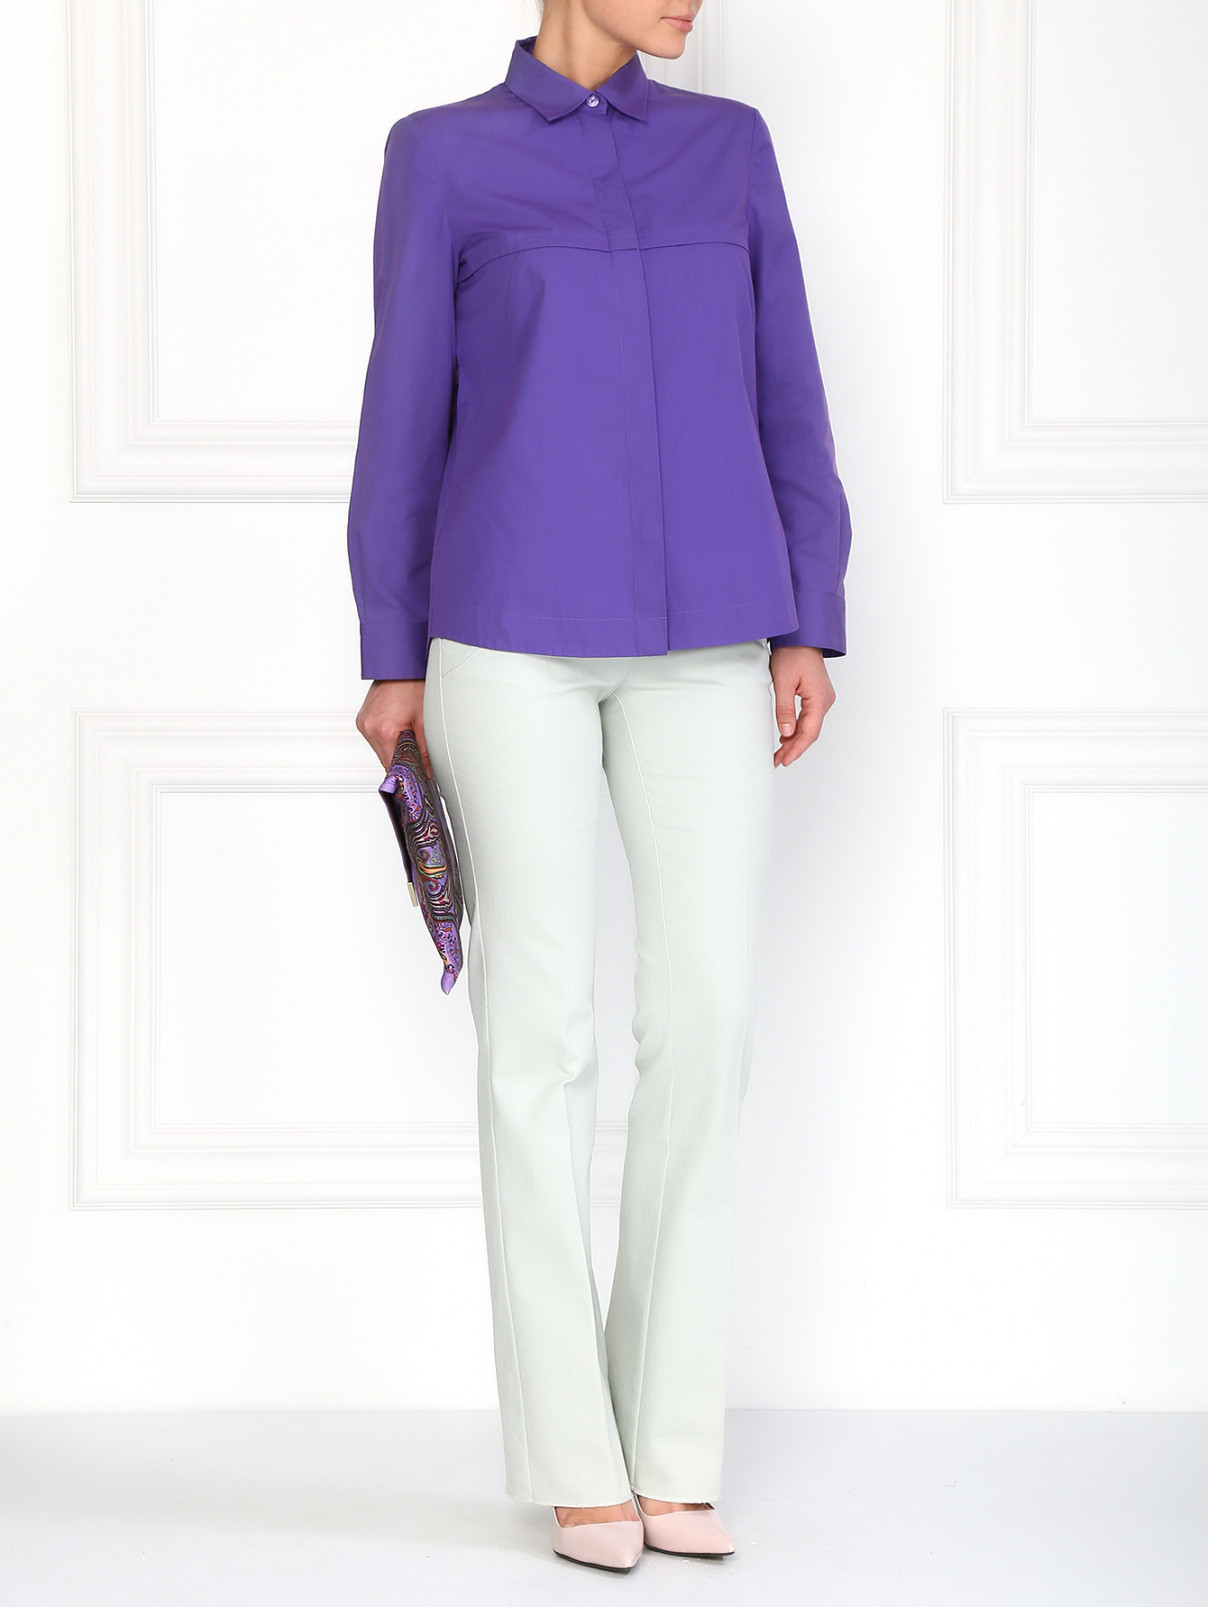 Рубашка свободного фасона Alberta Ferretti  –  Модель Общий вид  – Цвет:  Фиолетовый